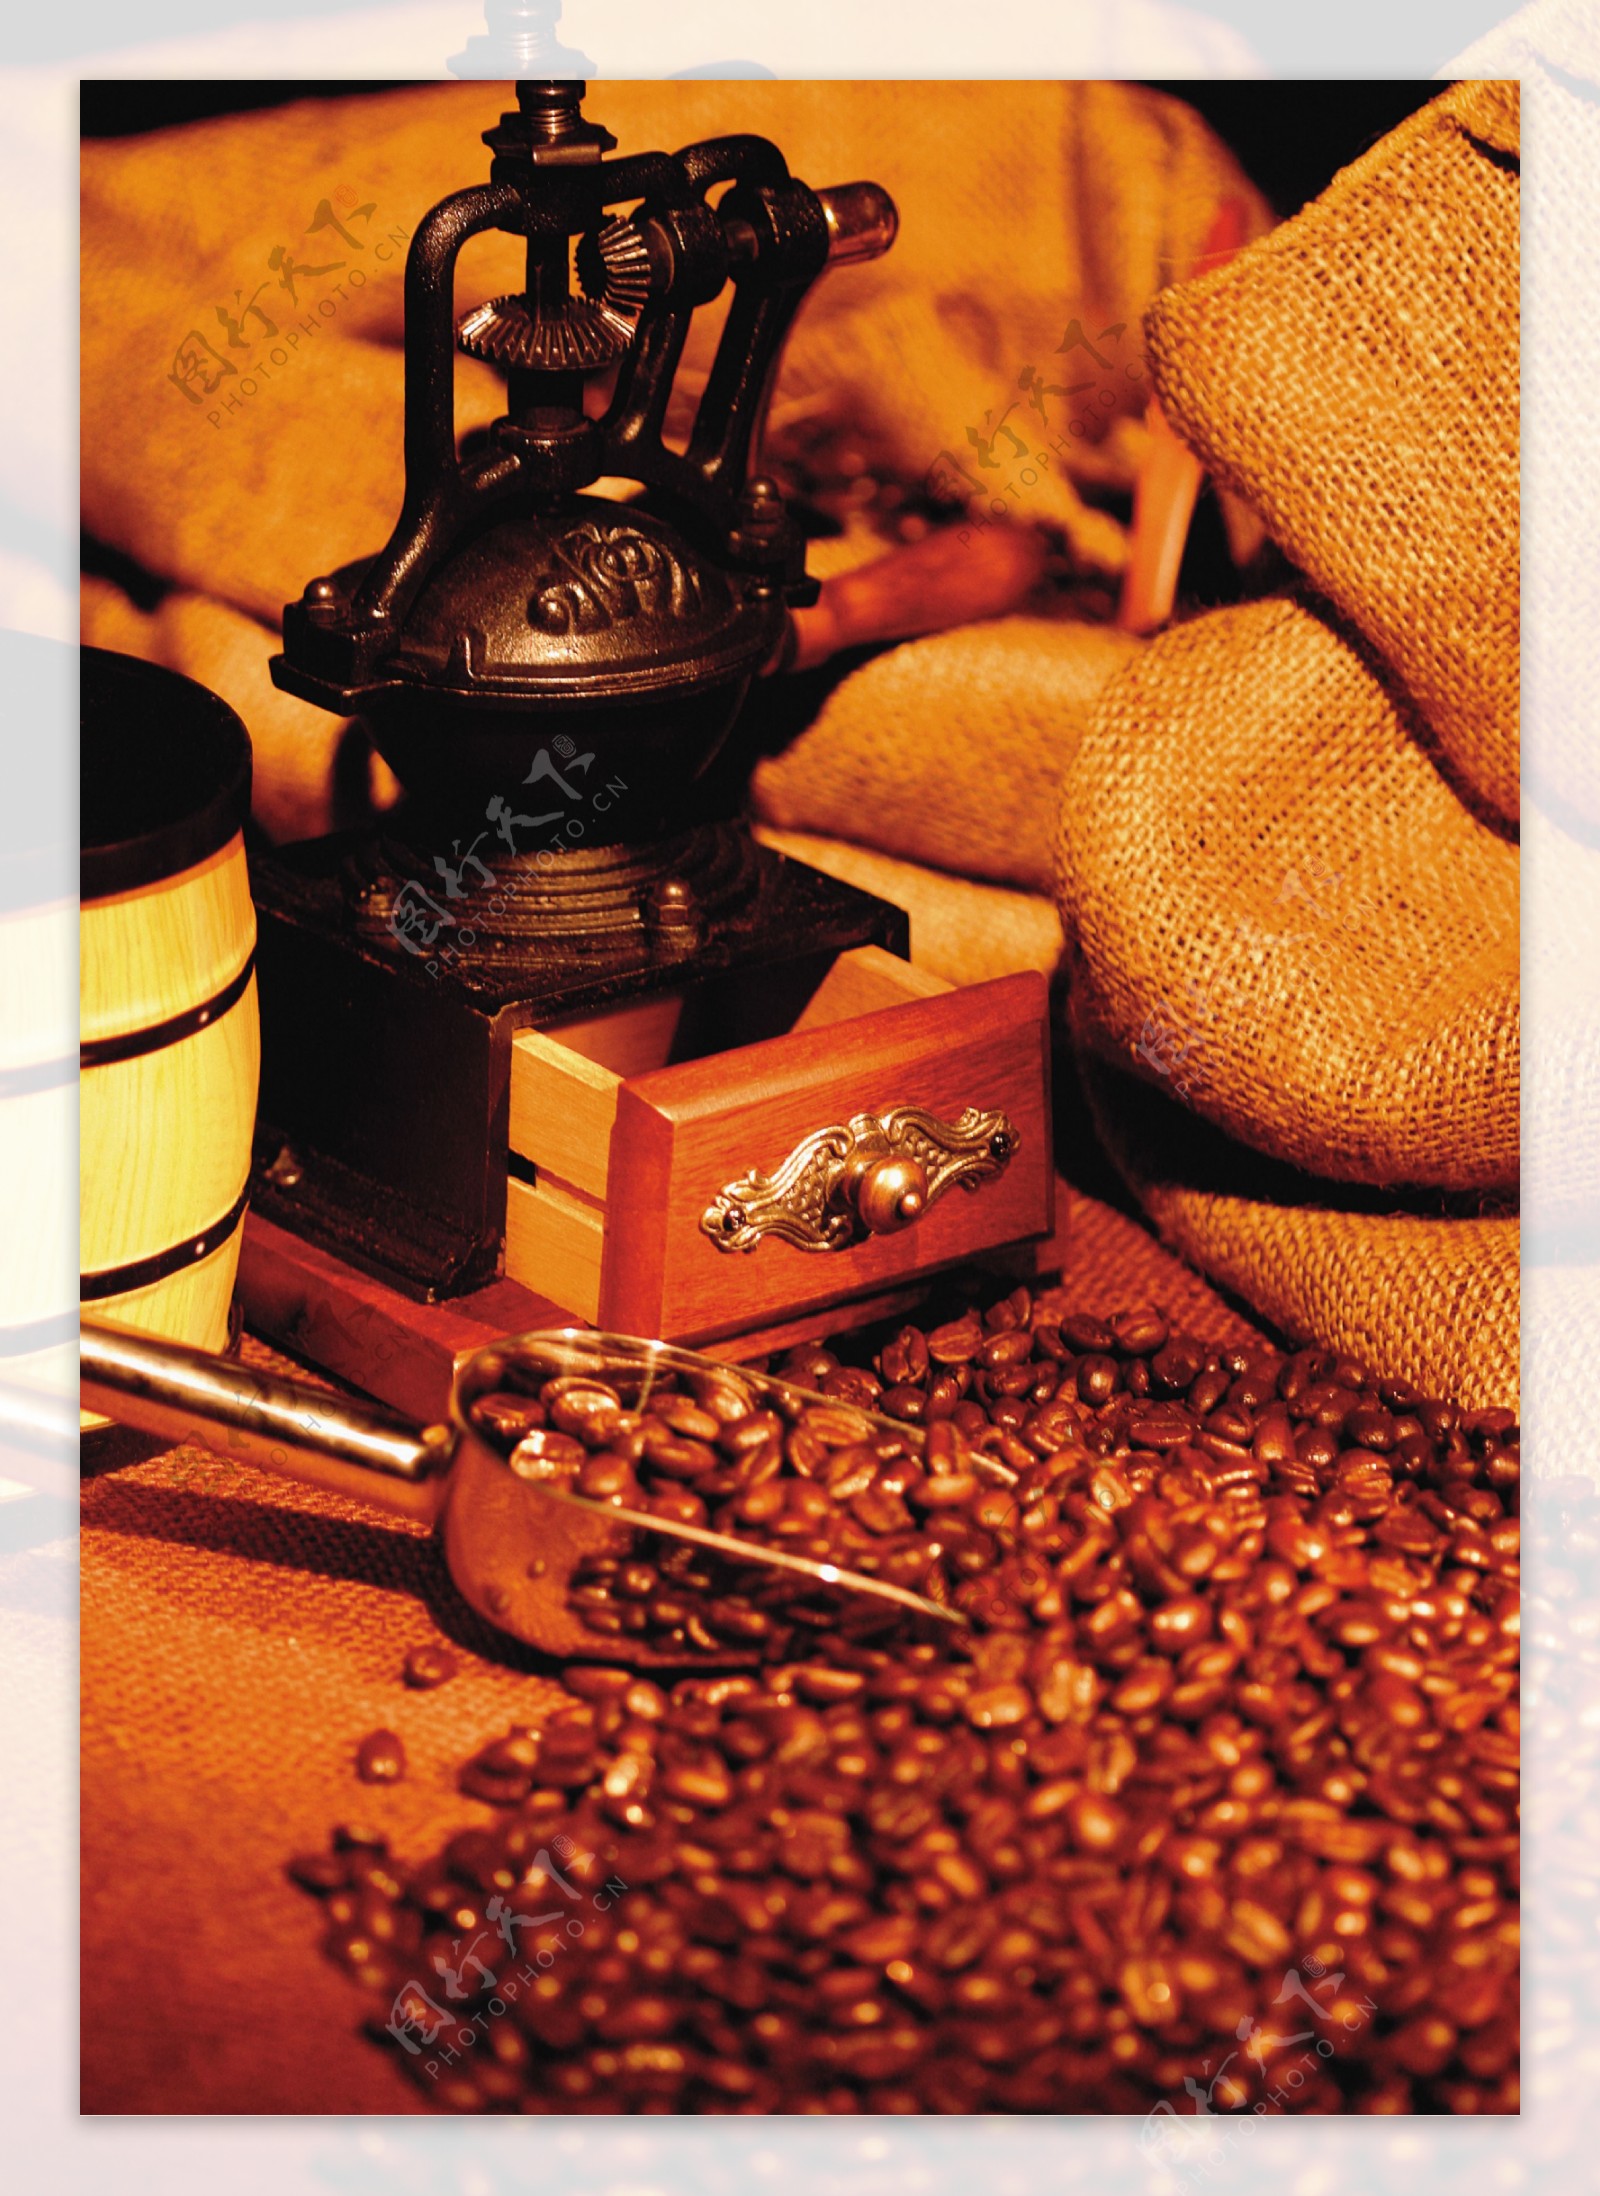 全球首席大百科咖啡美味香醇咖啡豆天然咖啡杯制作品尝